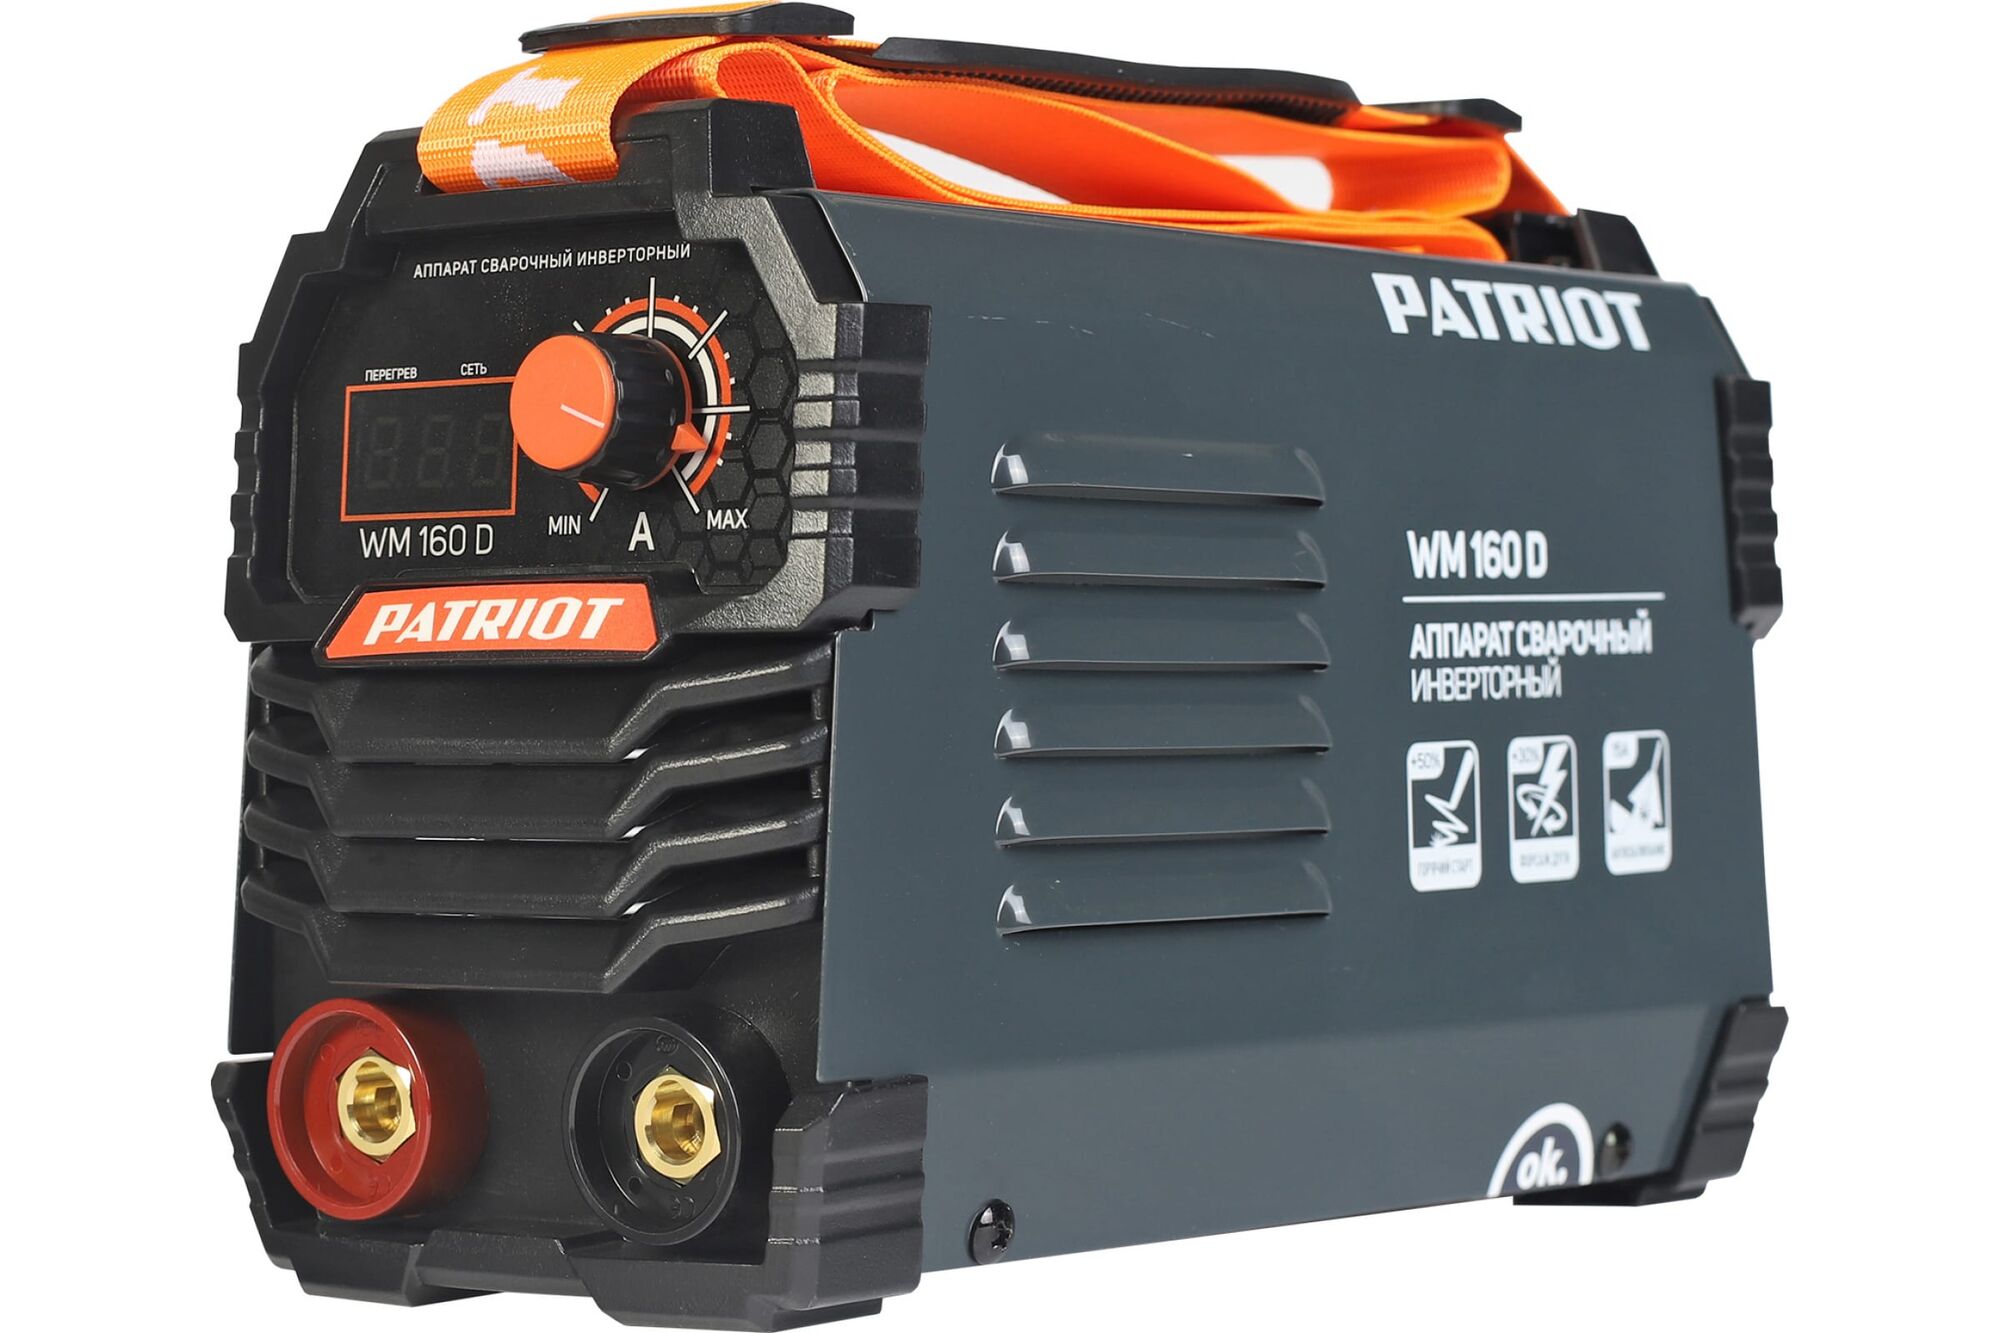 Сварочный инверторный аппарат PATRIOT WM160D 605302016 Patriot